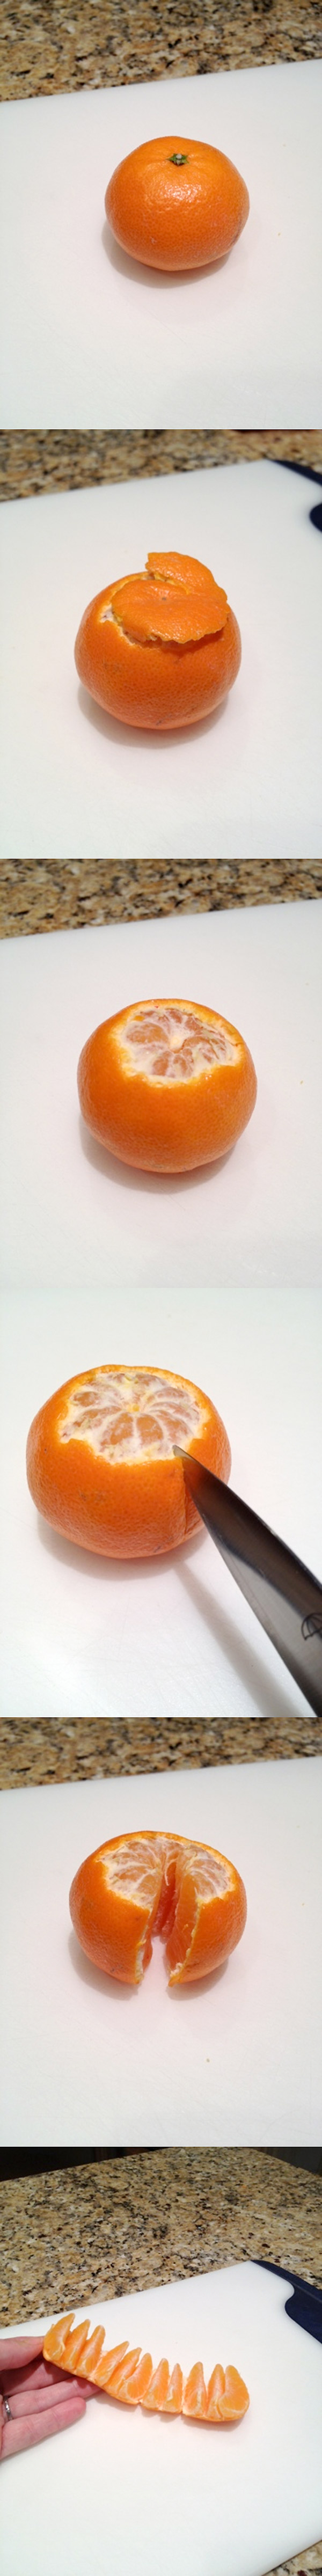 Esta forma de pelar las mandarinas y naranjas te cambiará la vida para siempre